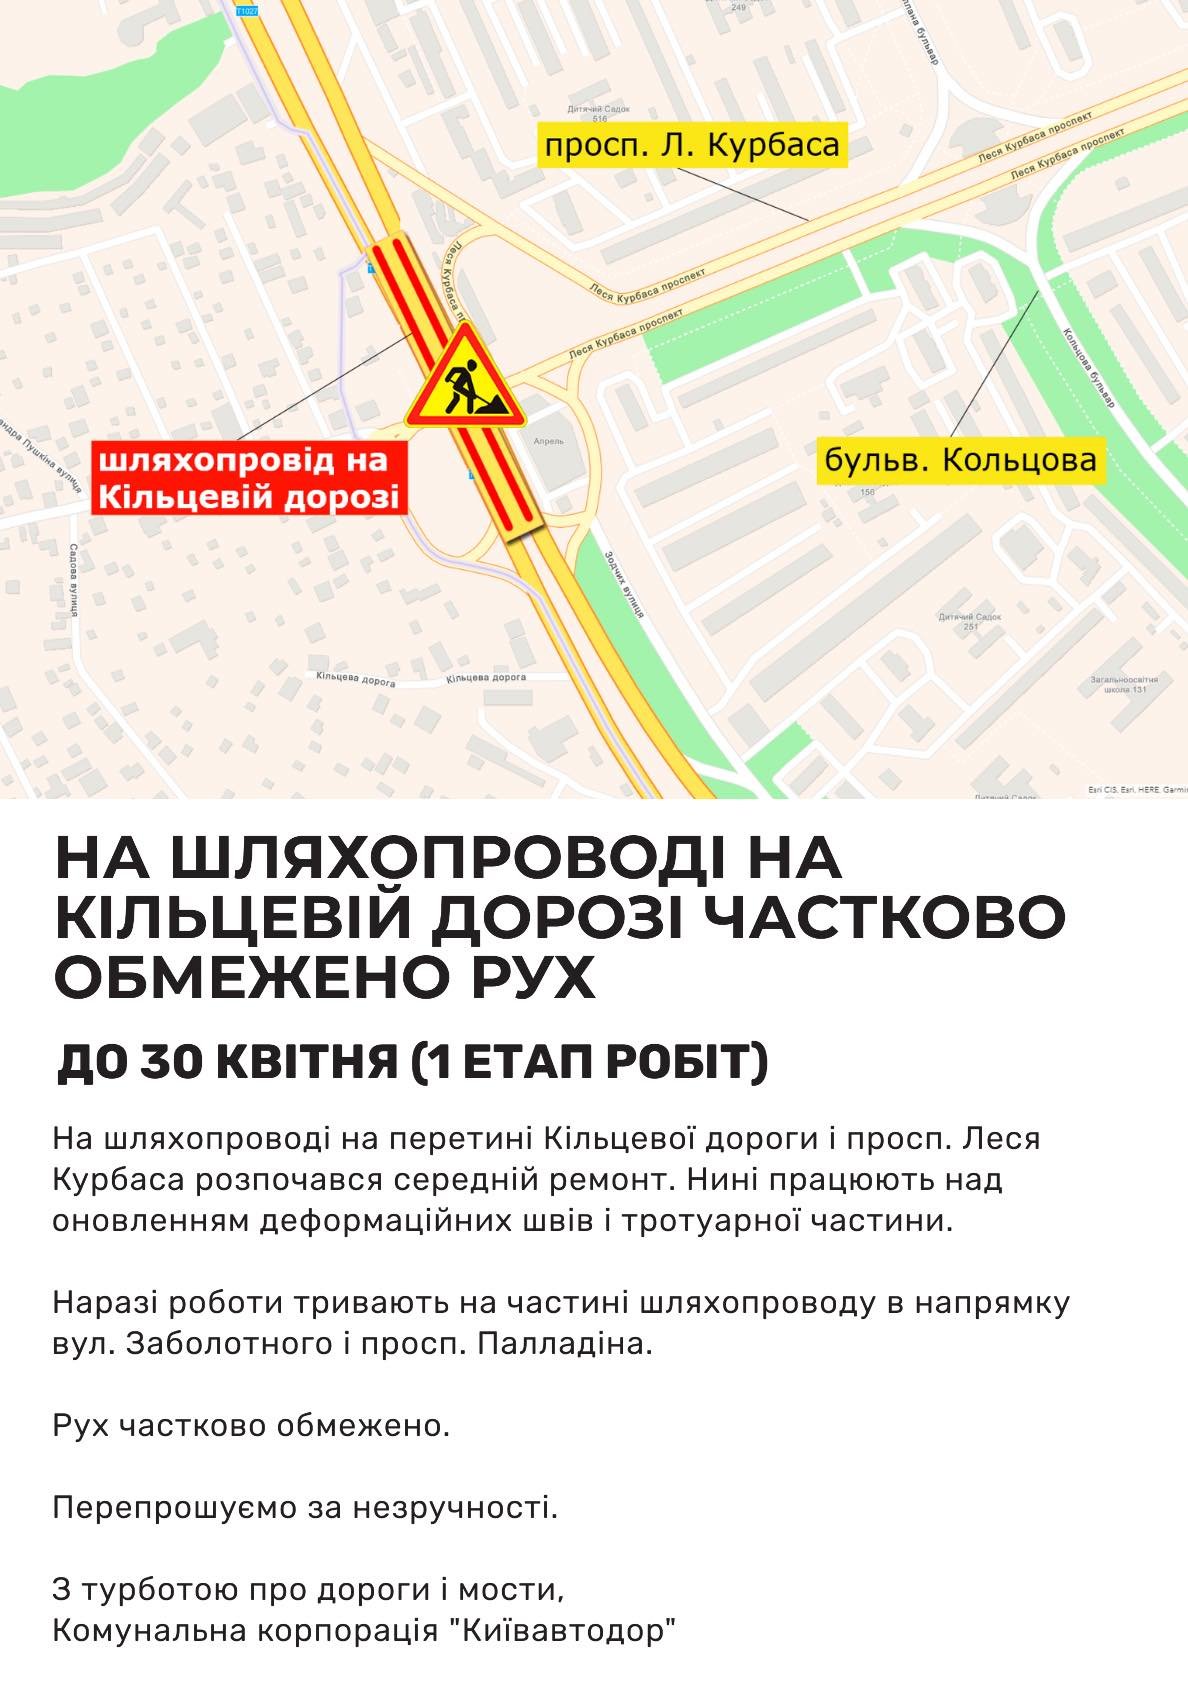 В Киеве закрывают на ремонт путепровода над Кольцевой дорогой., Фото пресс-службы Киевавтодора